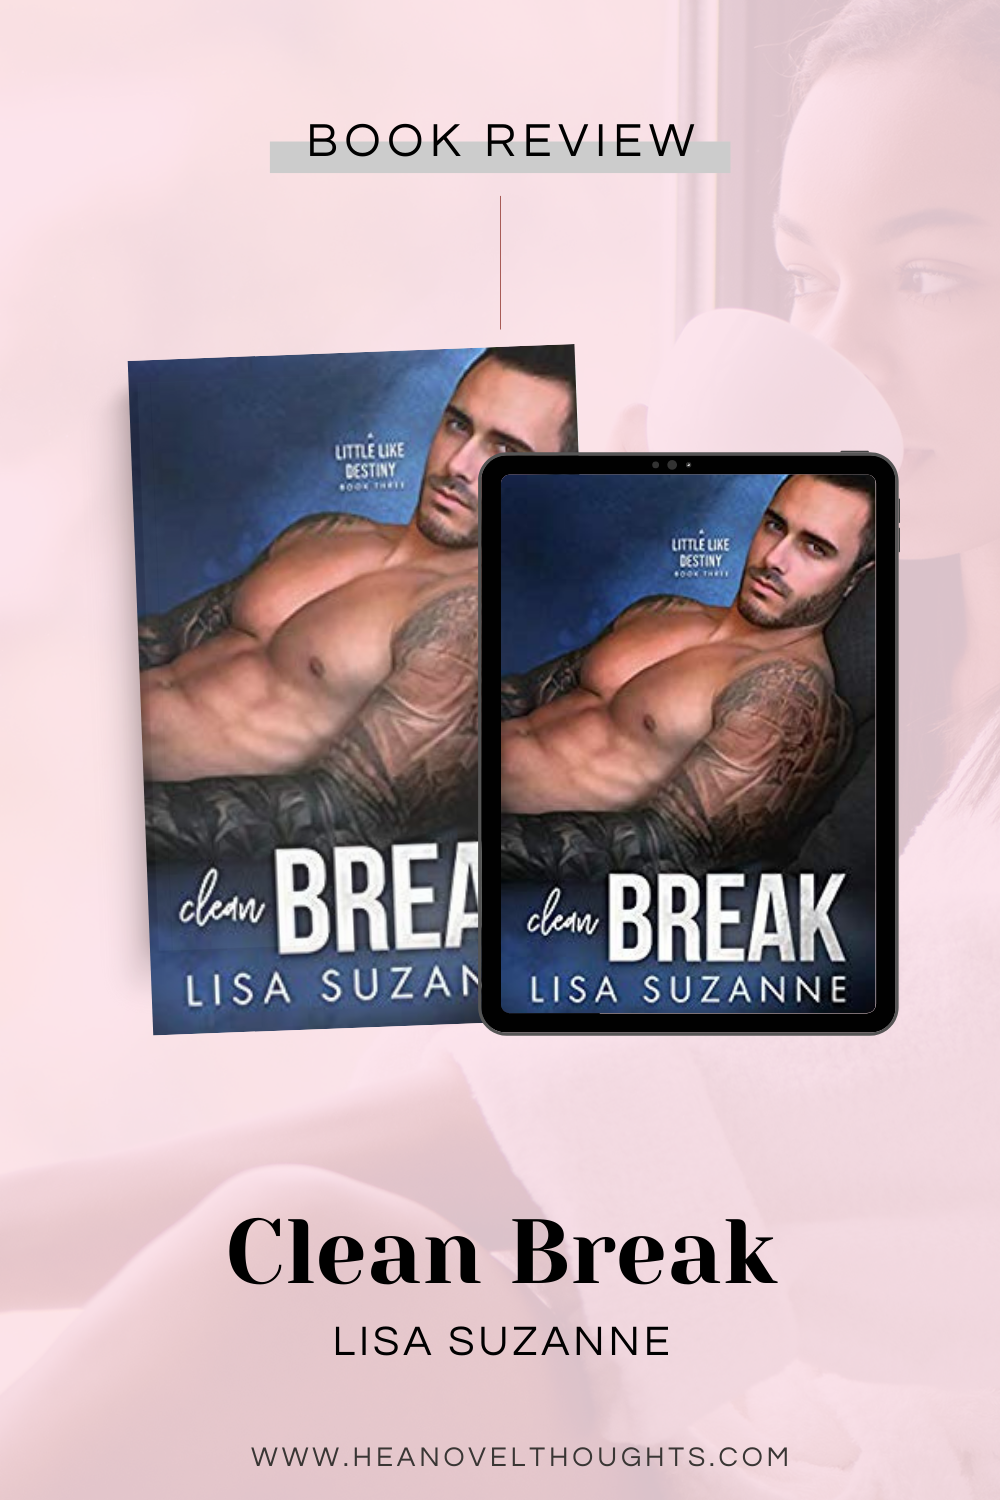 Clean Break by Lisa Suzanne